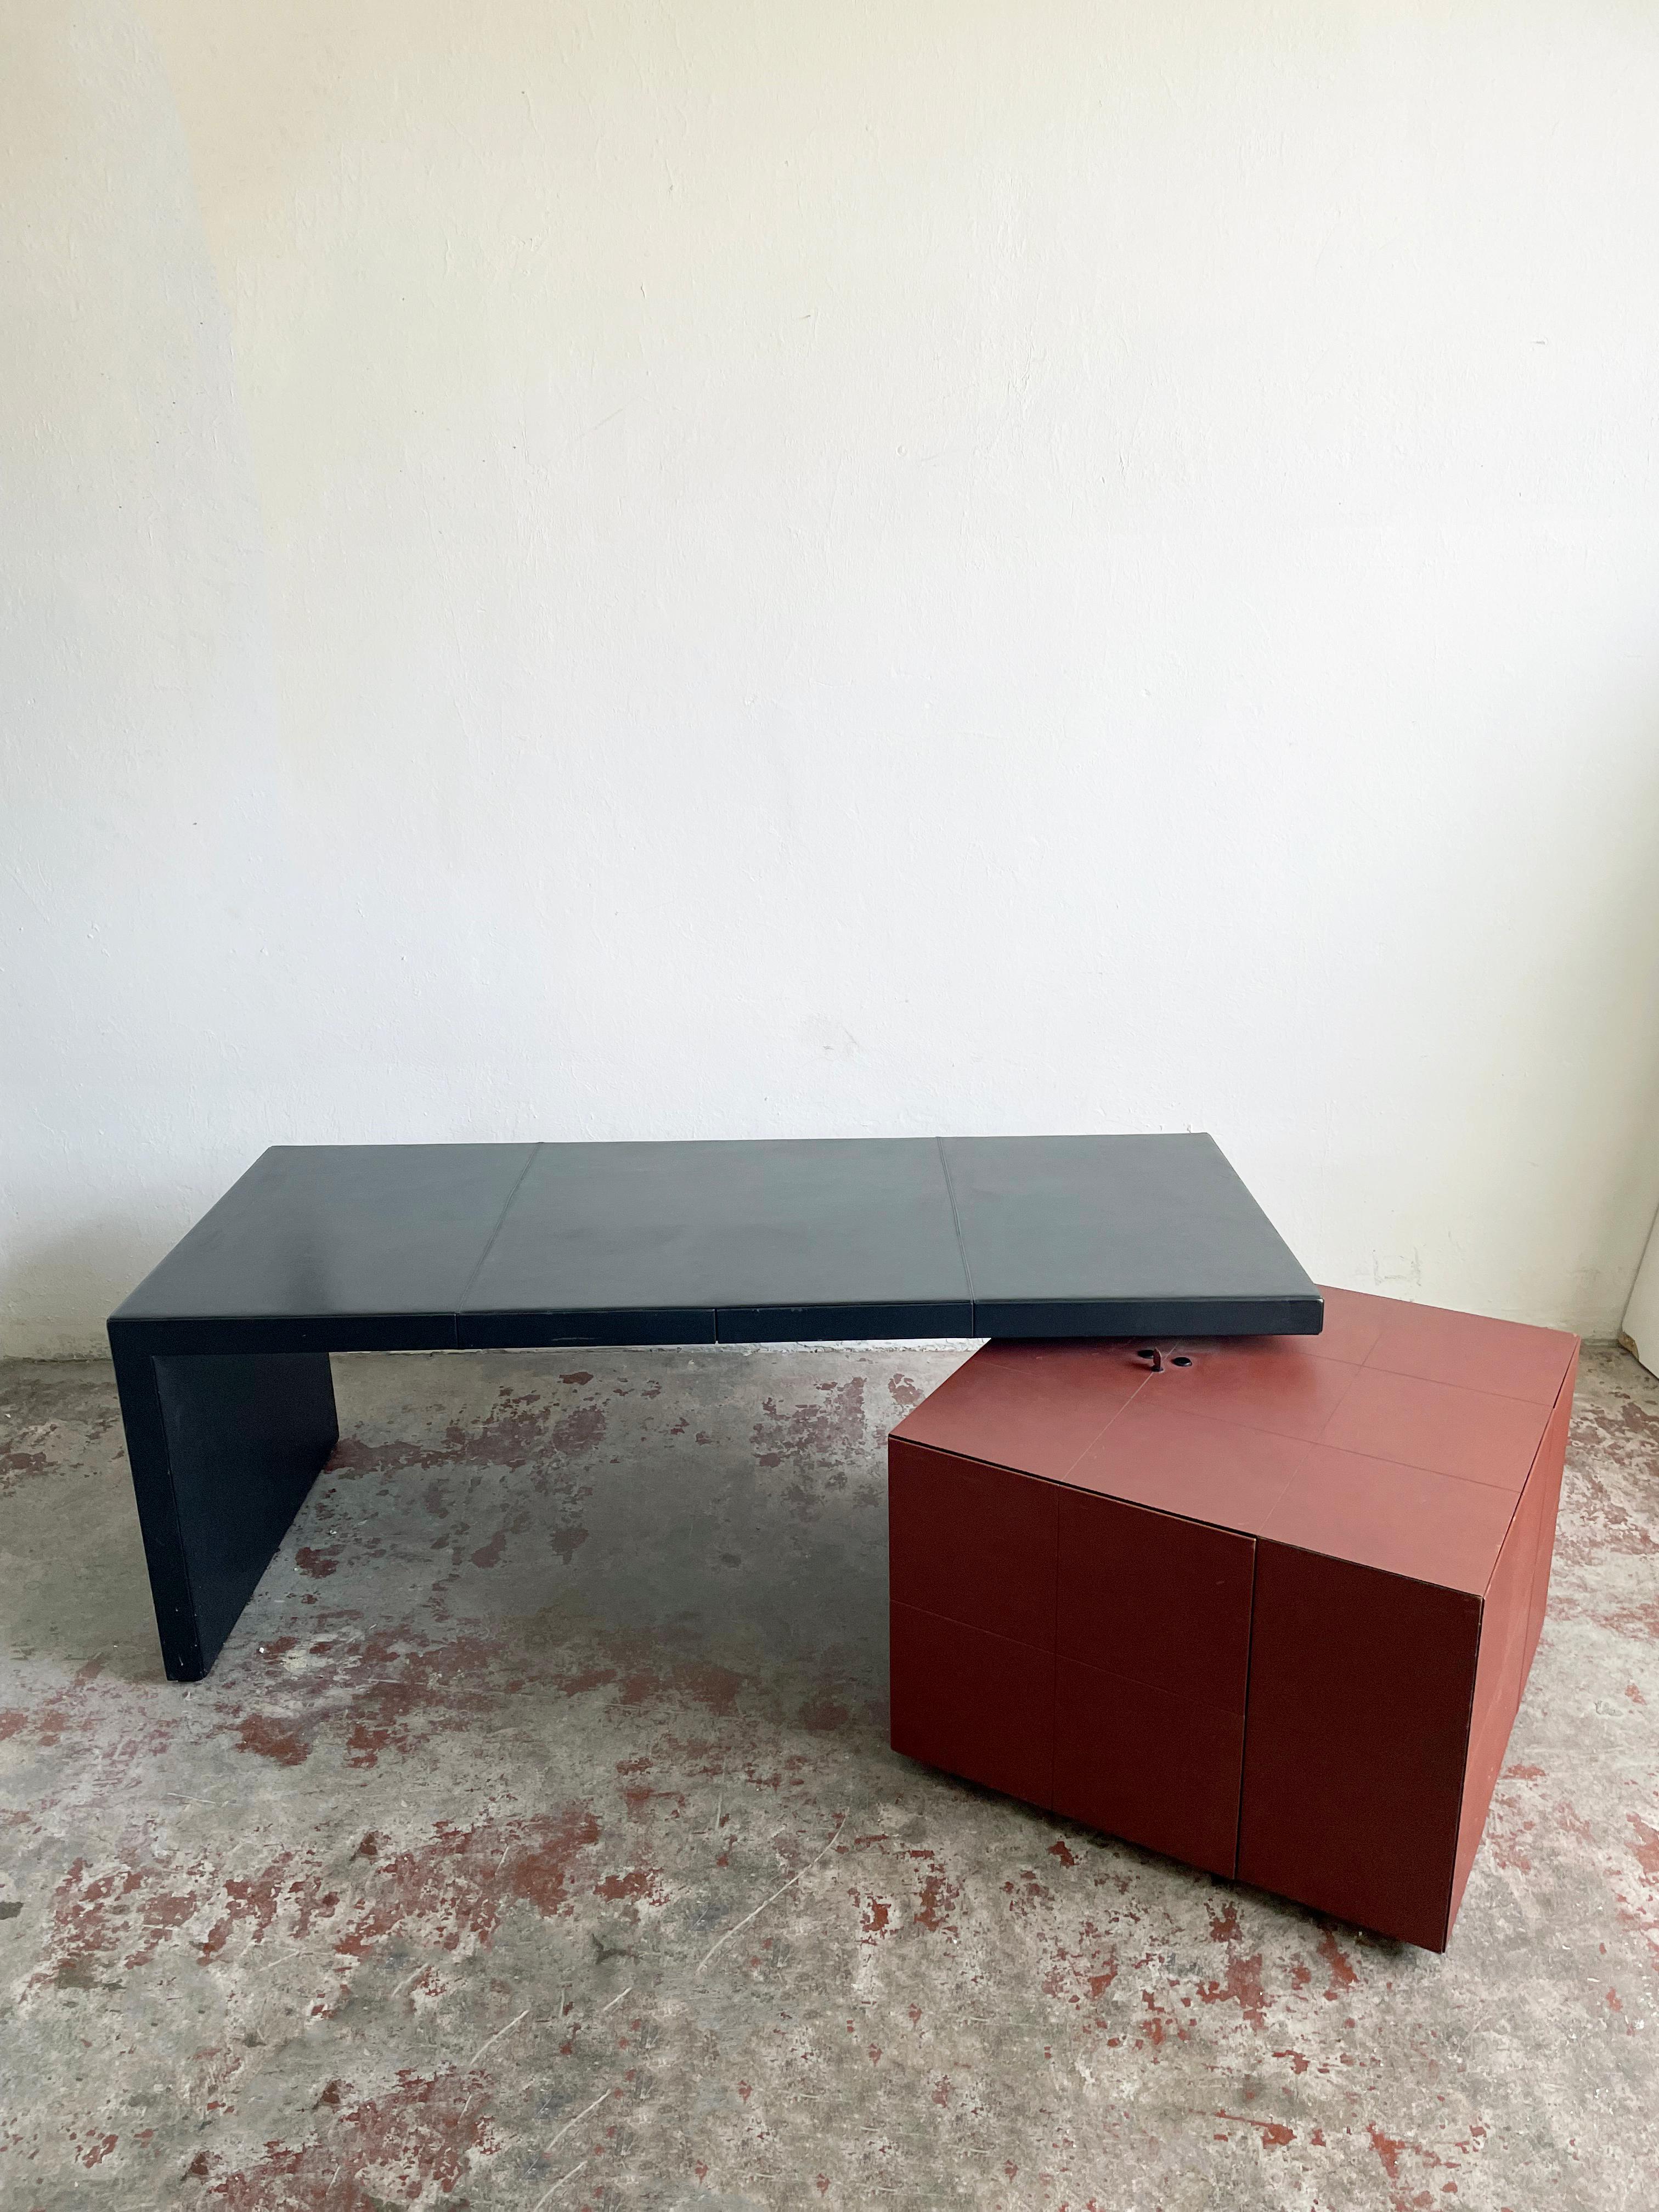 C.E.O. Cube Leather Desk Designed by Lella & Massimo Vignelli for Poltrona Frau In Good Condition For Sale In Zagreb, HR